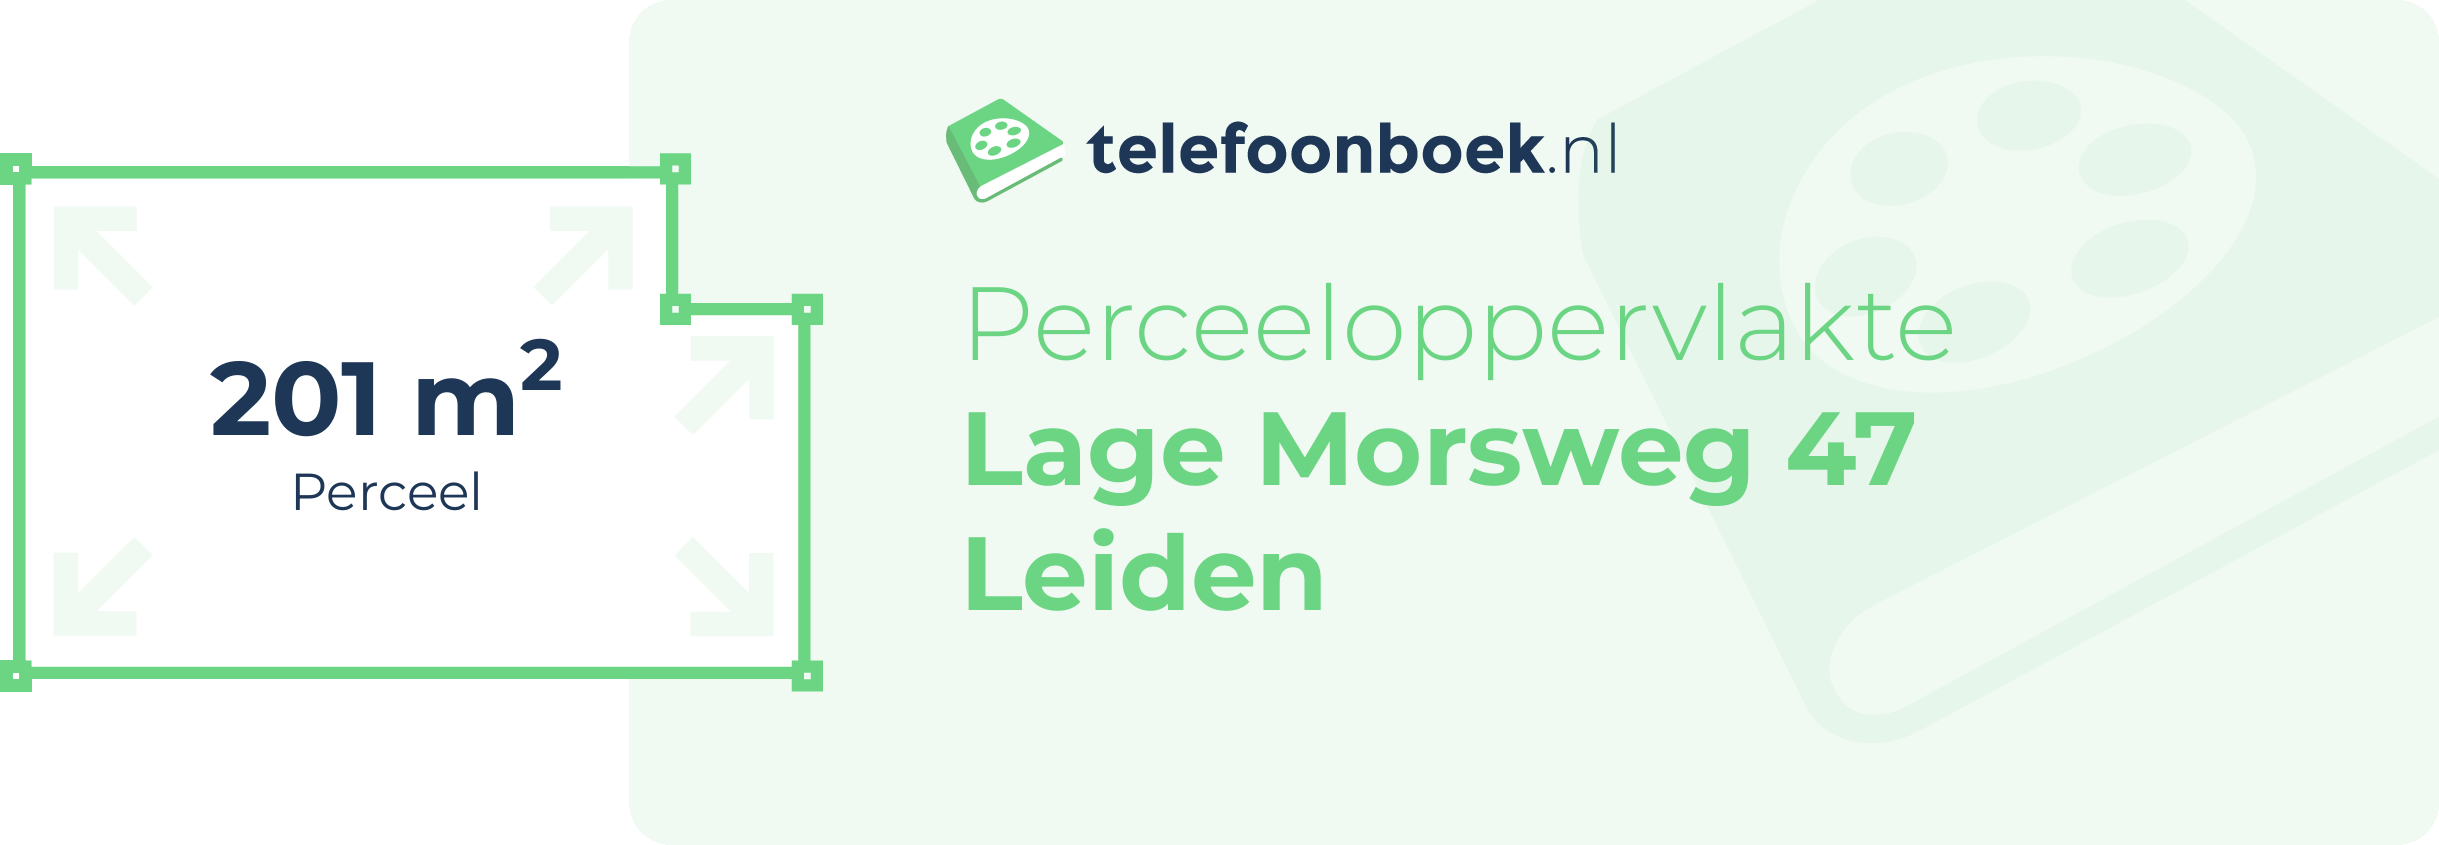 Perceeloppervlakte Lage Morsweg 47 Leiden